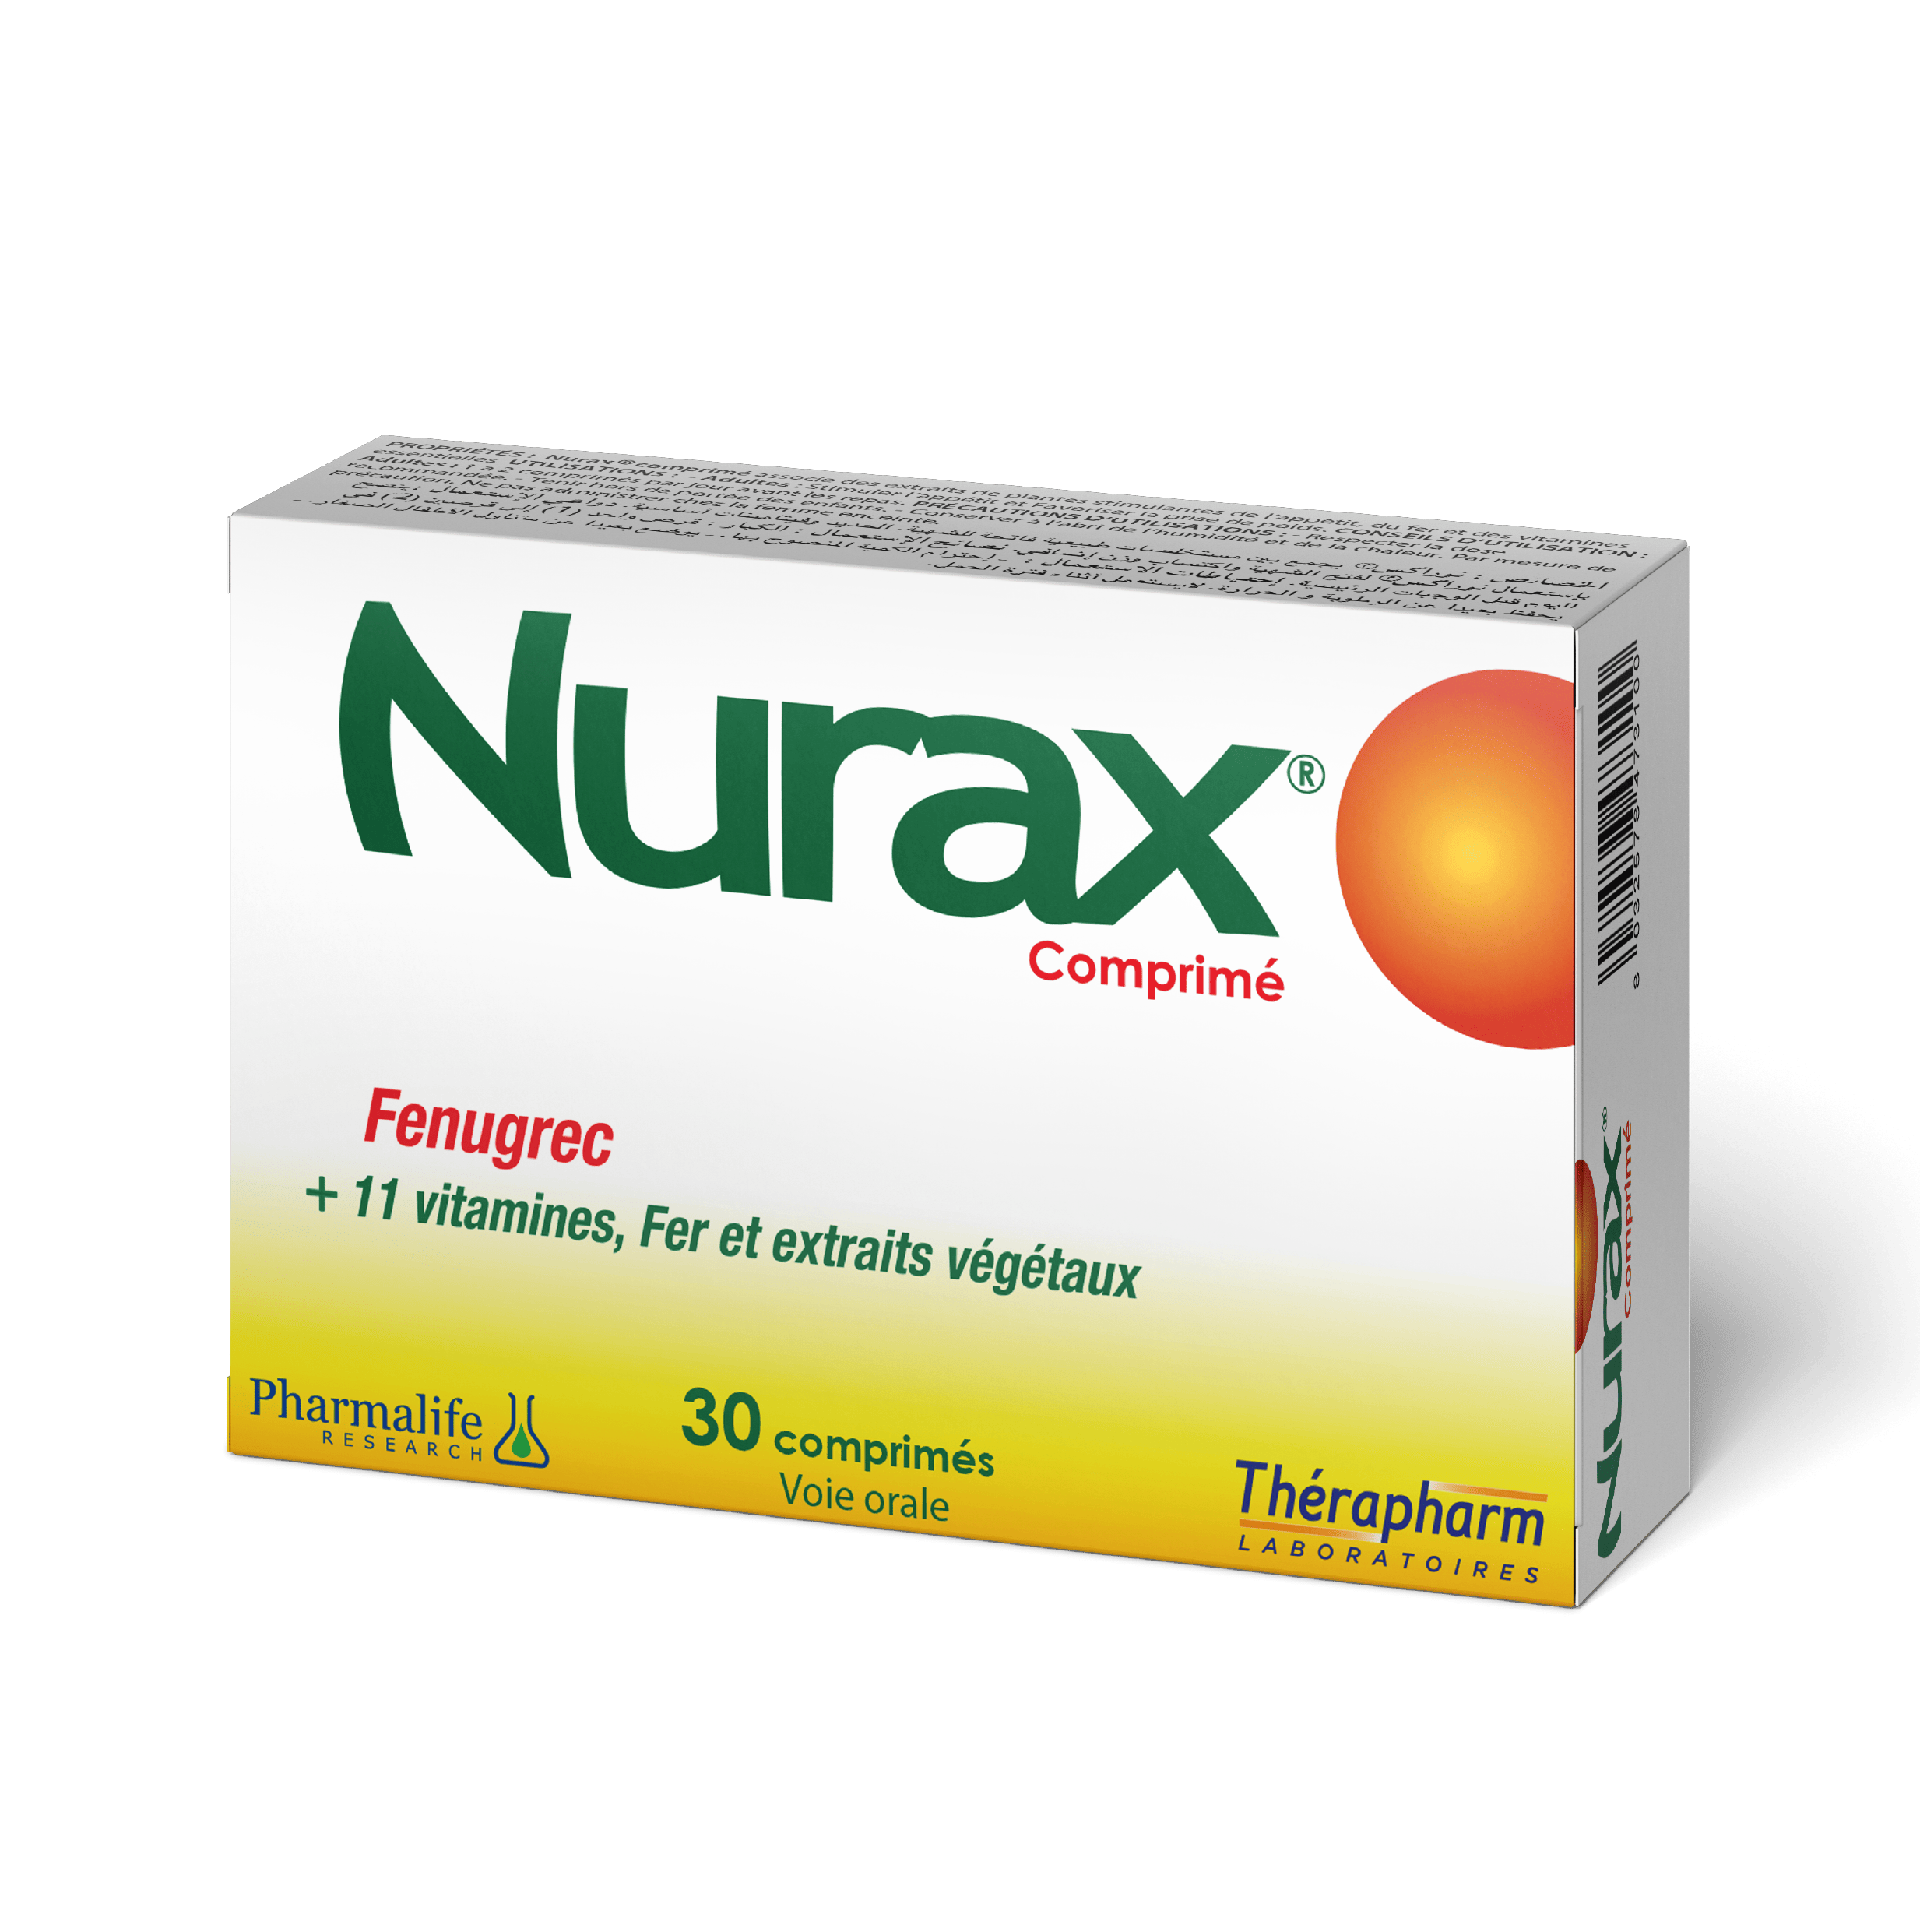 NURAX ®